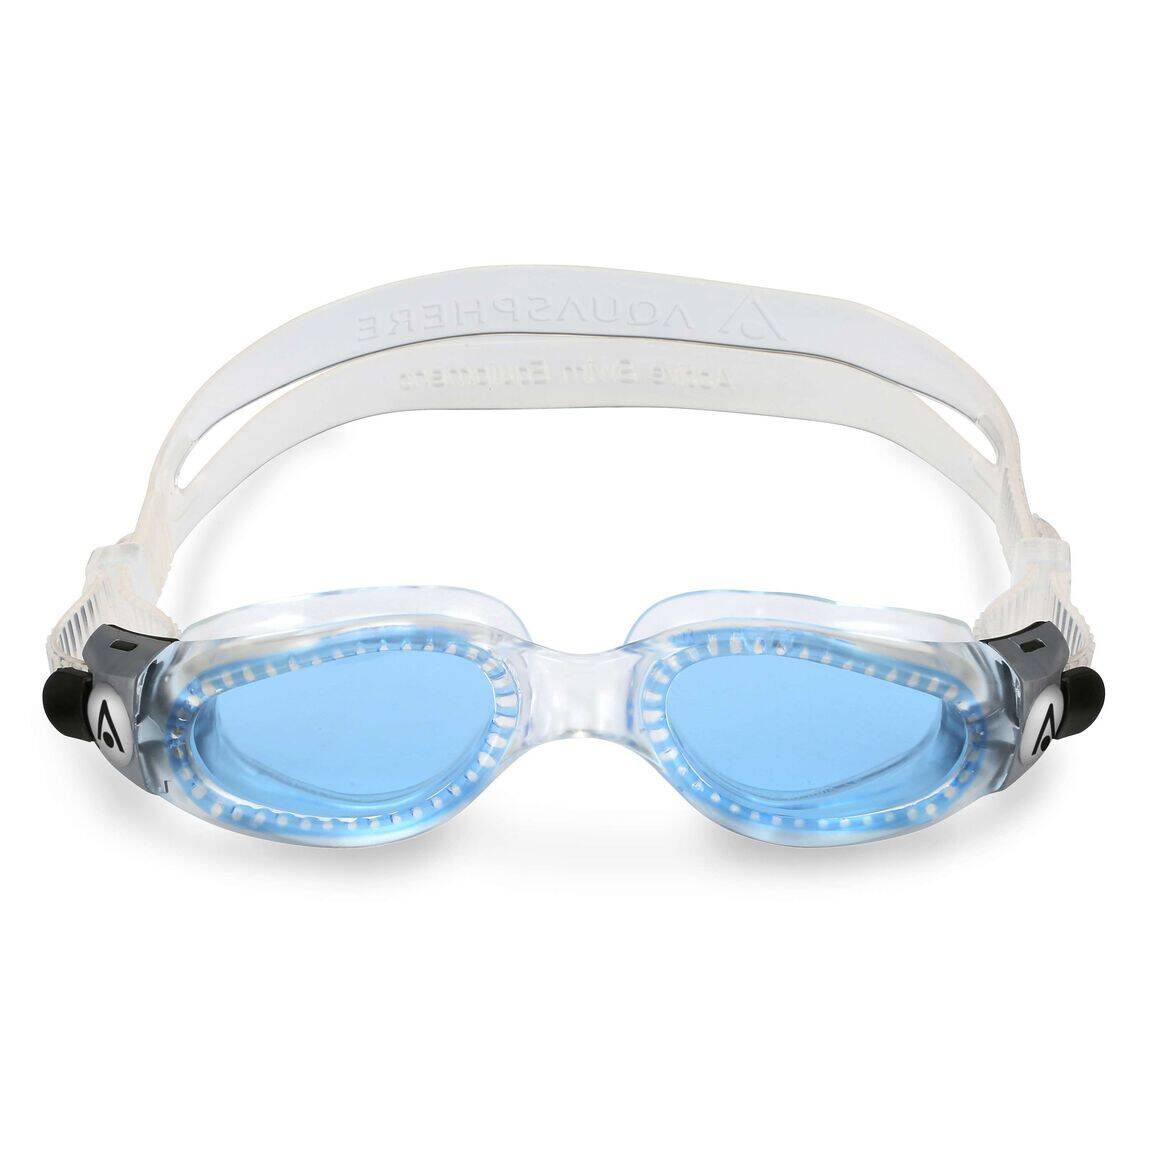 Aquasphere okulary Kaiman small niebieskie szkła EP3070000LB transp